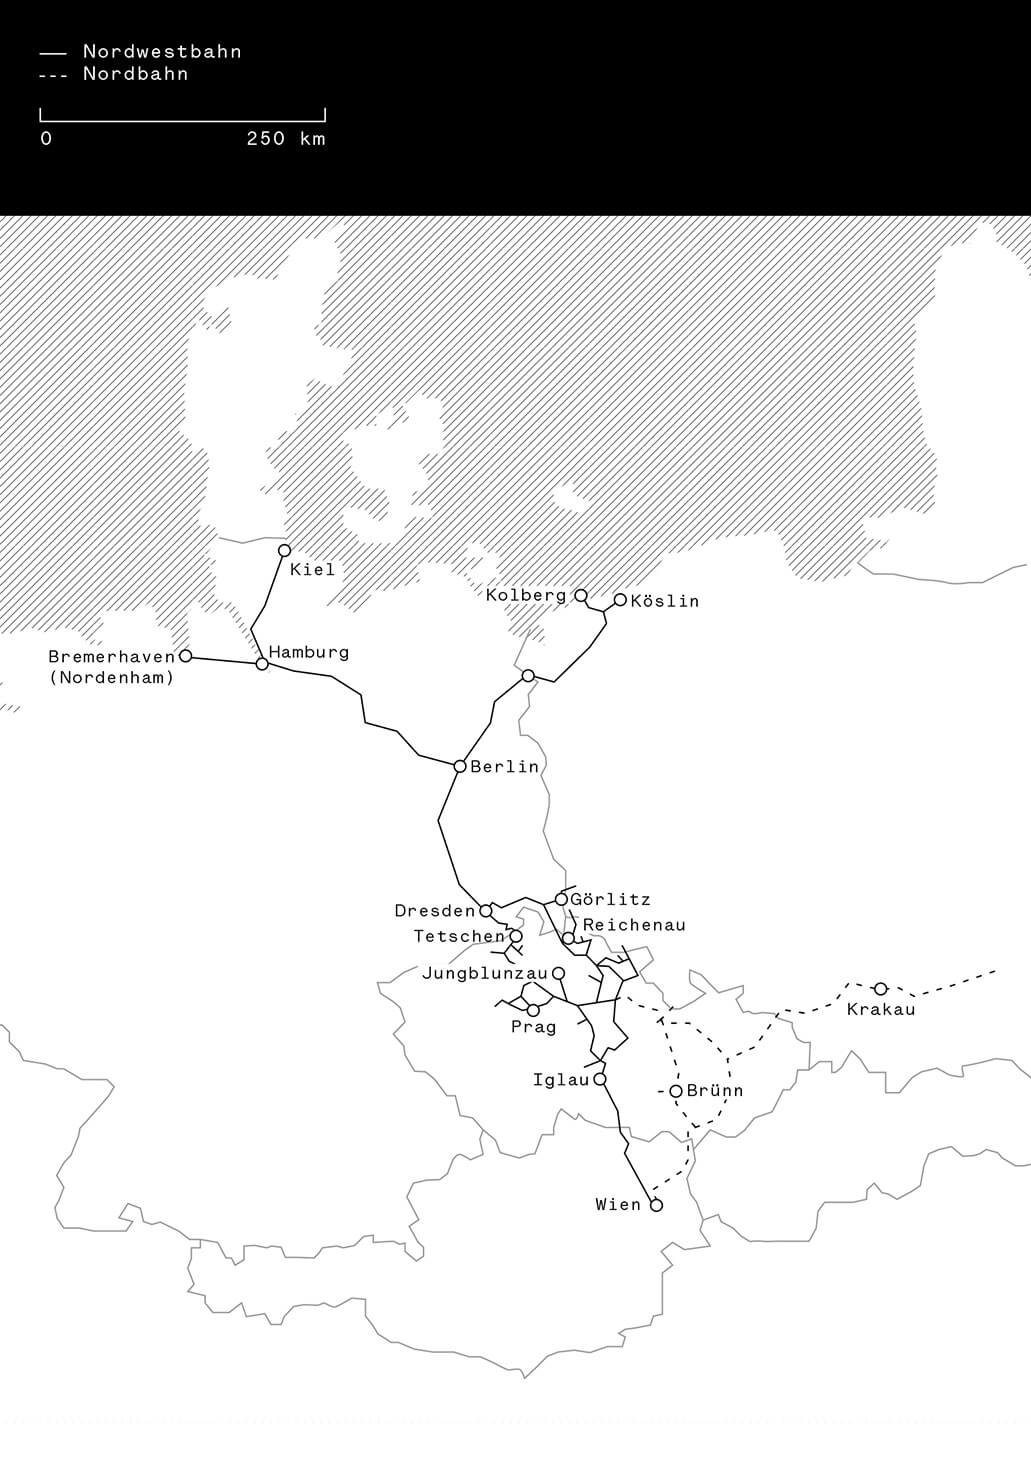 Diagramm des Liniennetzes der Nordwestbahn und ihrer Vorläufergesellschaft mit aktuellem Grenzverlauf; Zeichnung: Michael Hieslmair und Michael Zinganel 